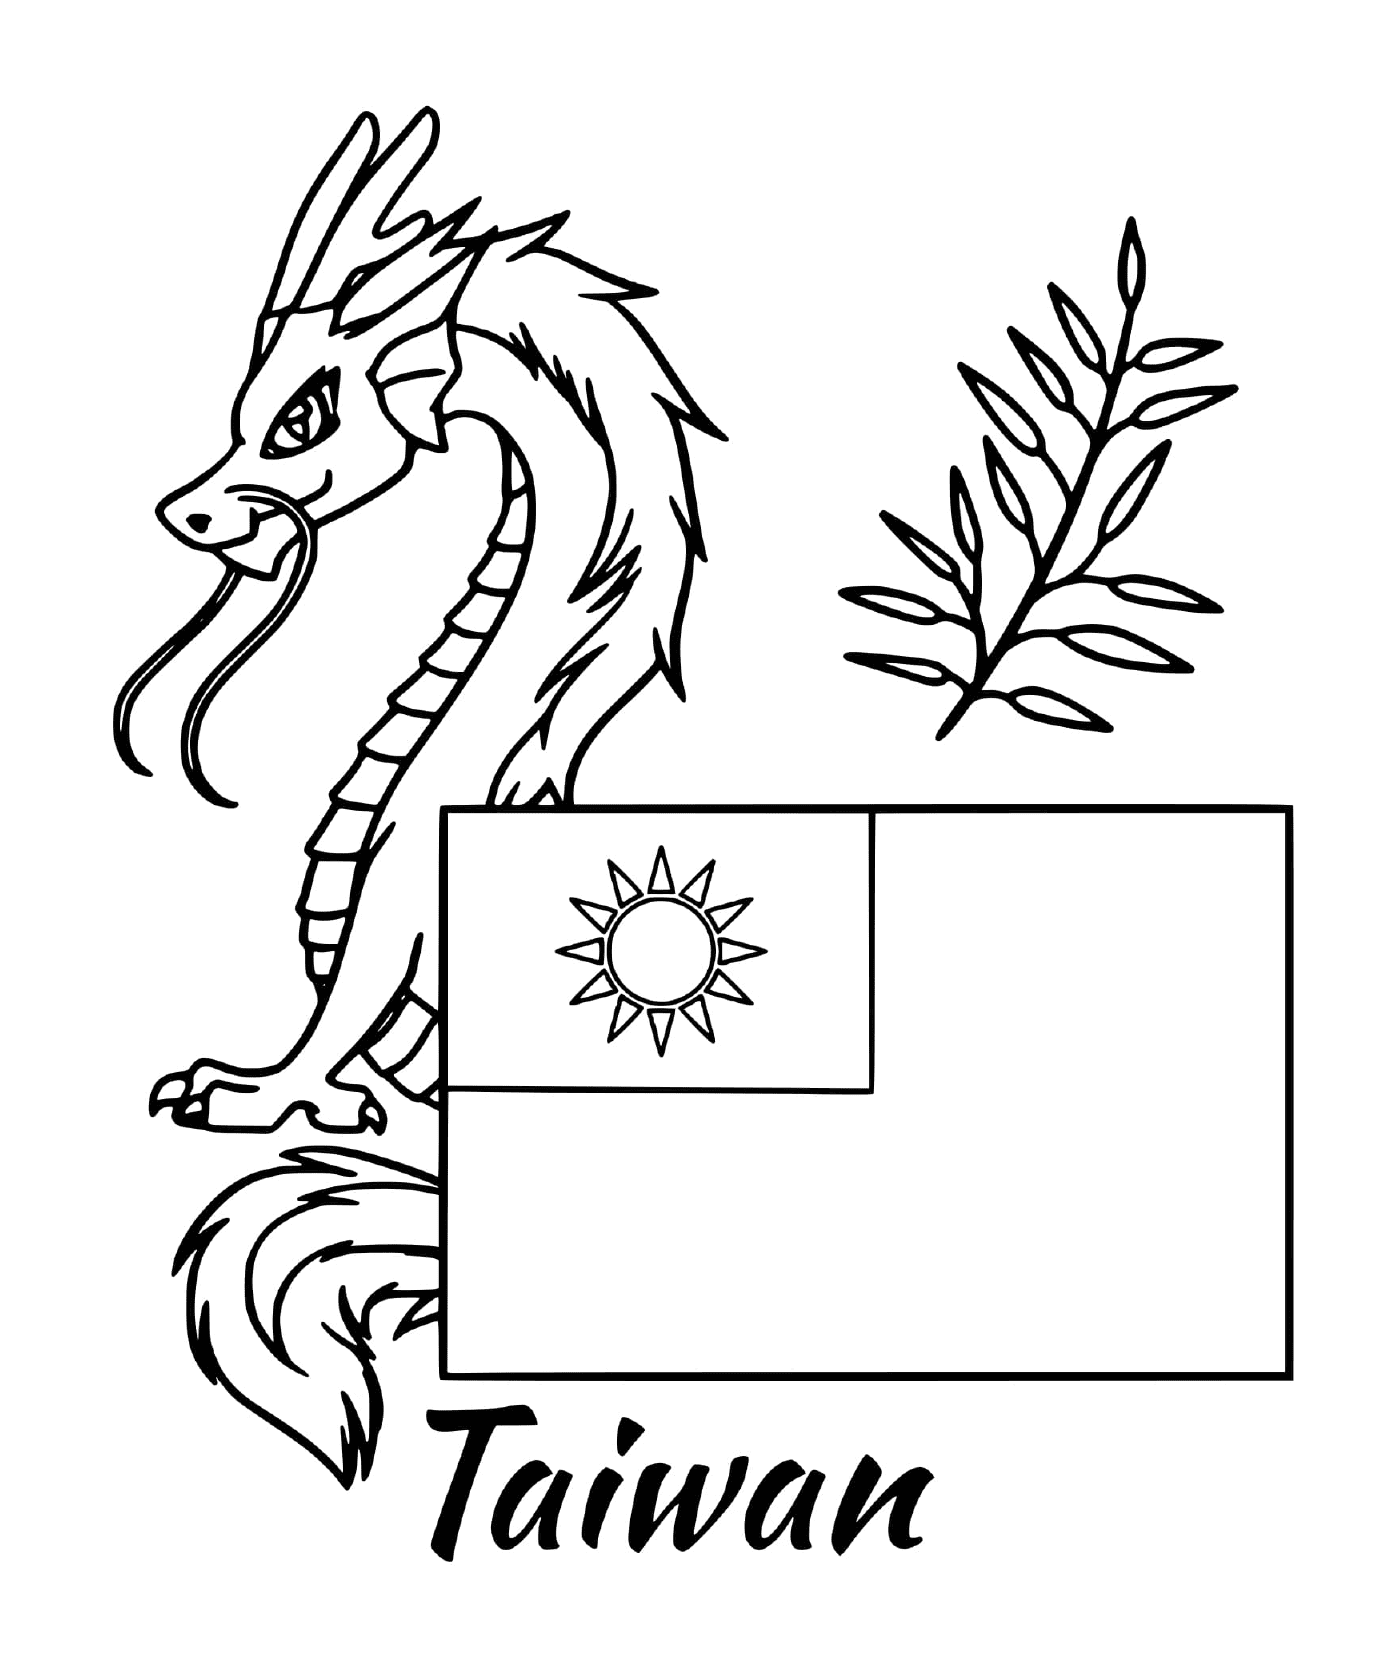  ताइवान झंडा ड्रैगन्स के साथ 